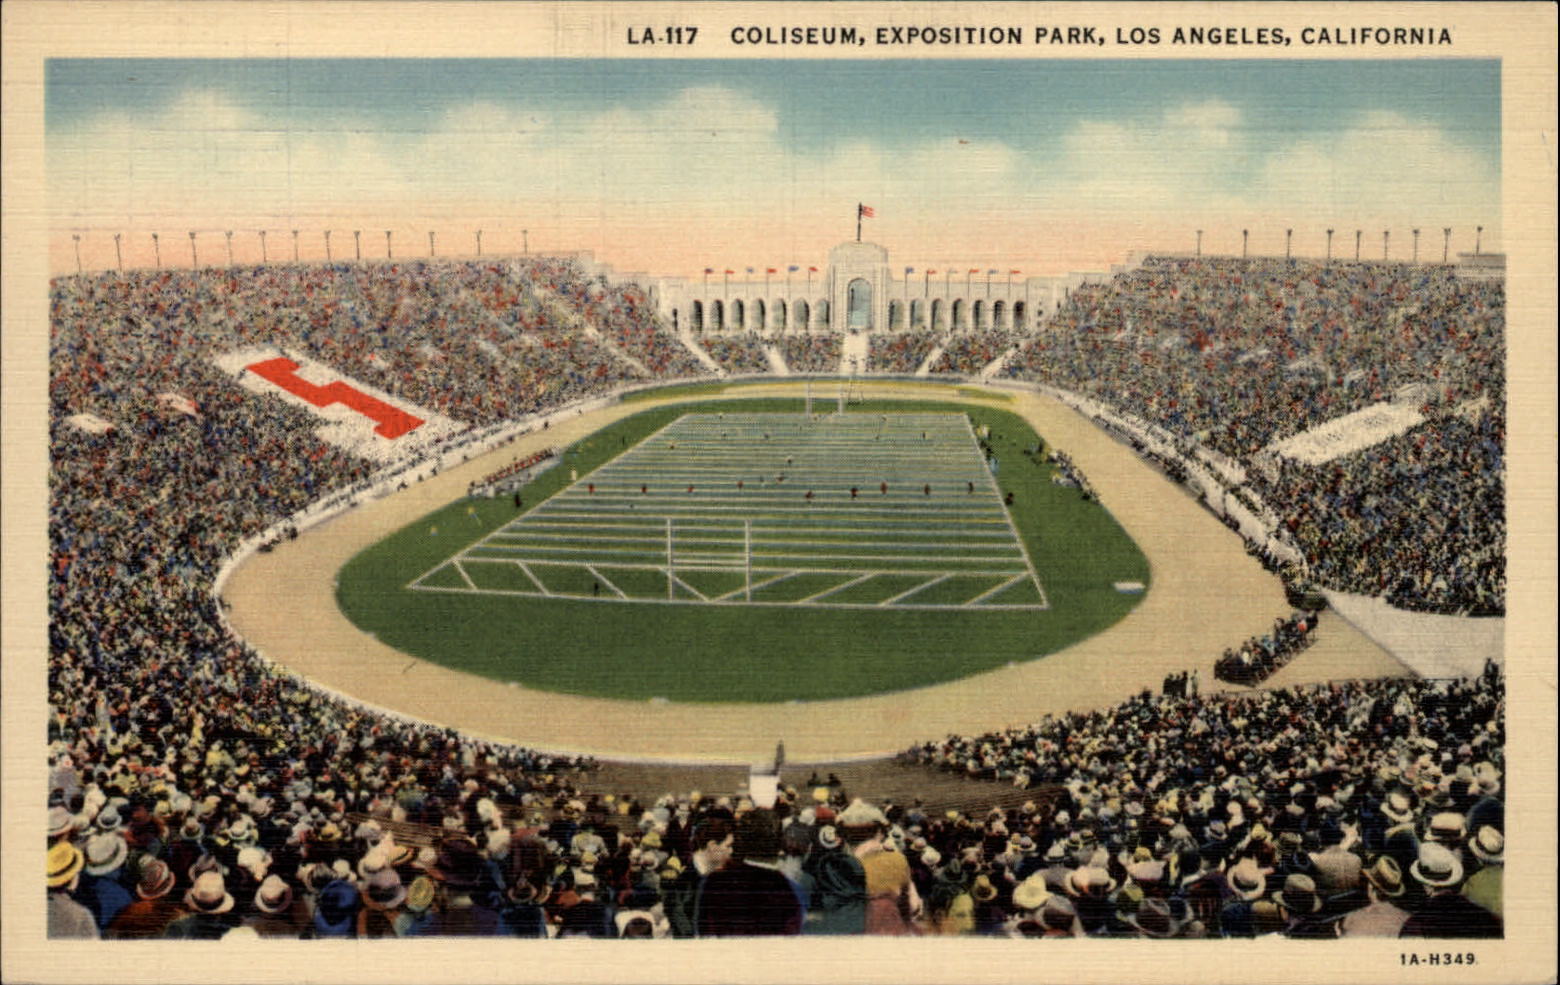 Coliseum Exposition Park Los Angeles California stadium aerial 1940s postcard